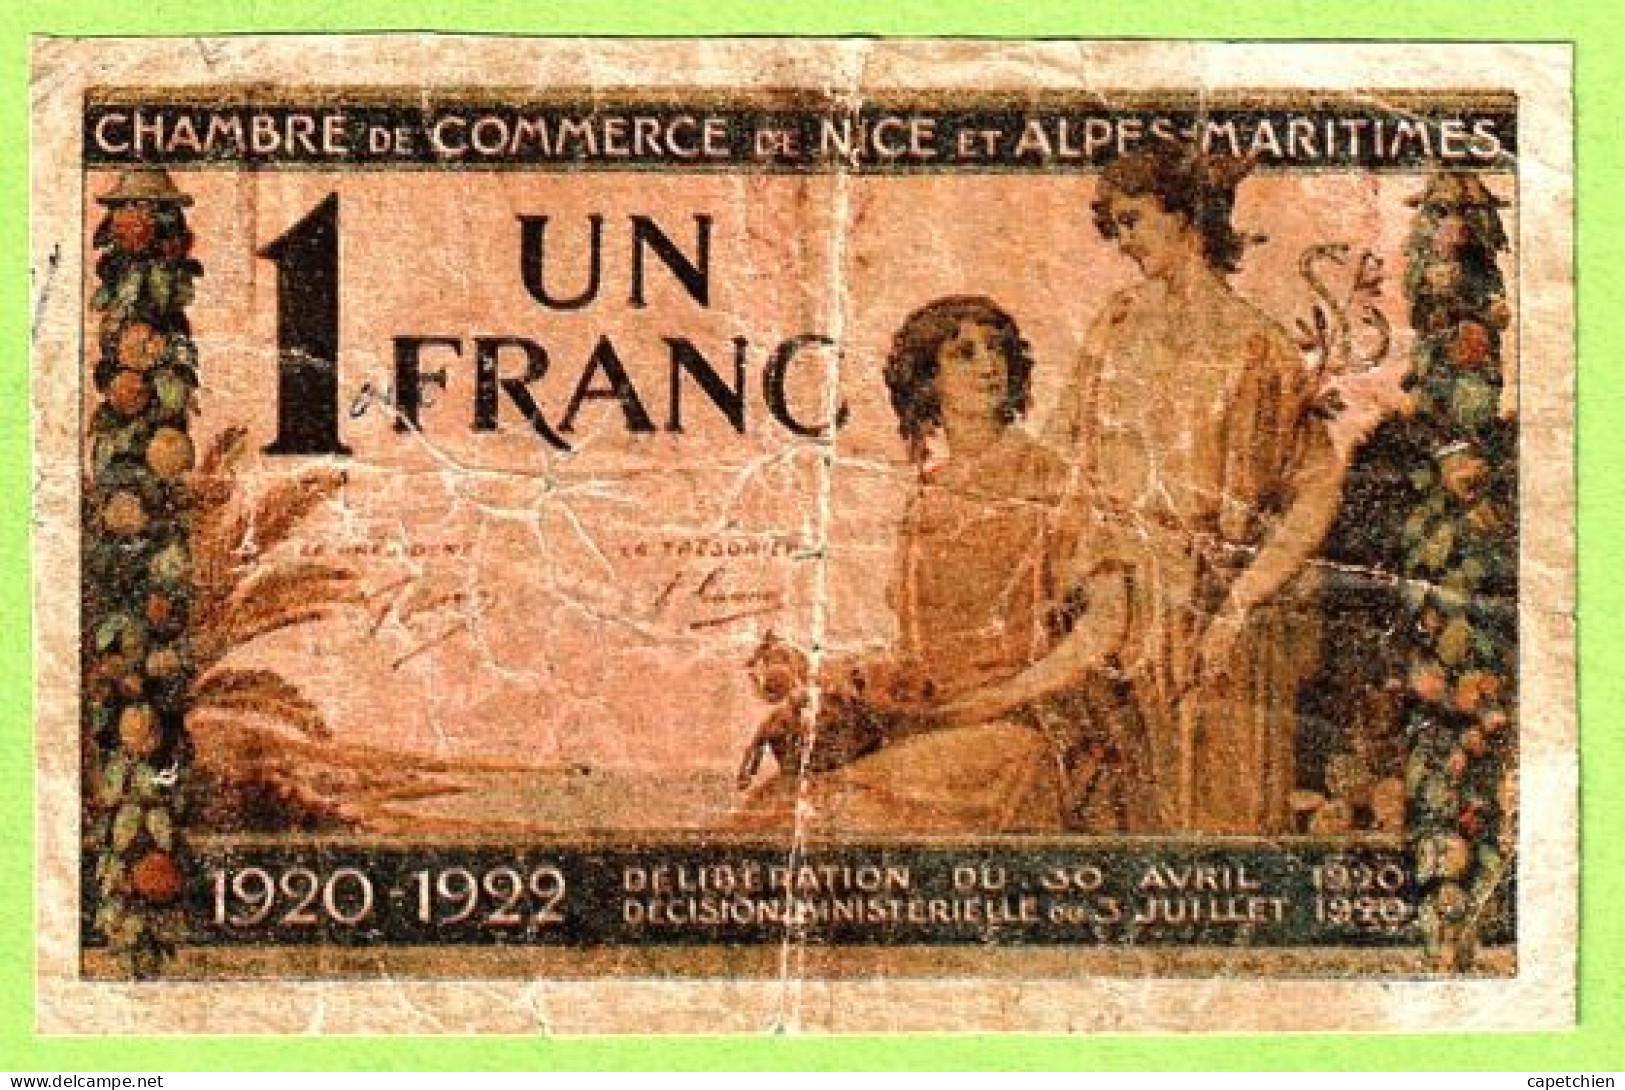 FRANCE / CHAMBRE De COMMERCE / NICE - ALPES MARITIMES / 1 FRANC / 30 AVRIL 1920 / N° 0.030.985 / SERIE 145 - Handelskammer